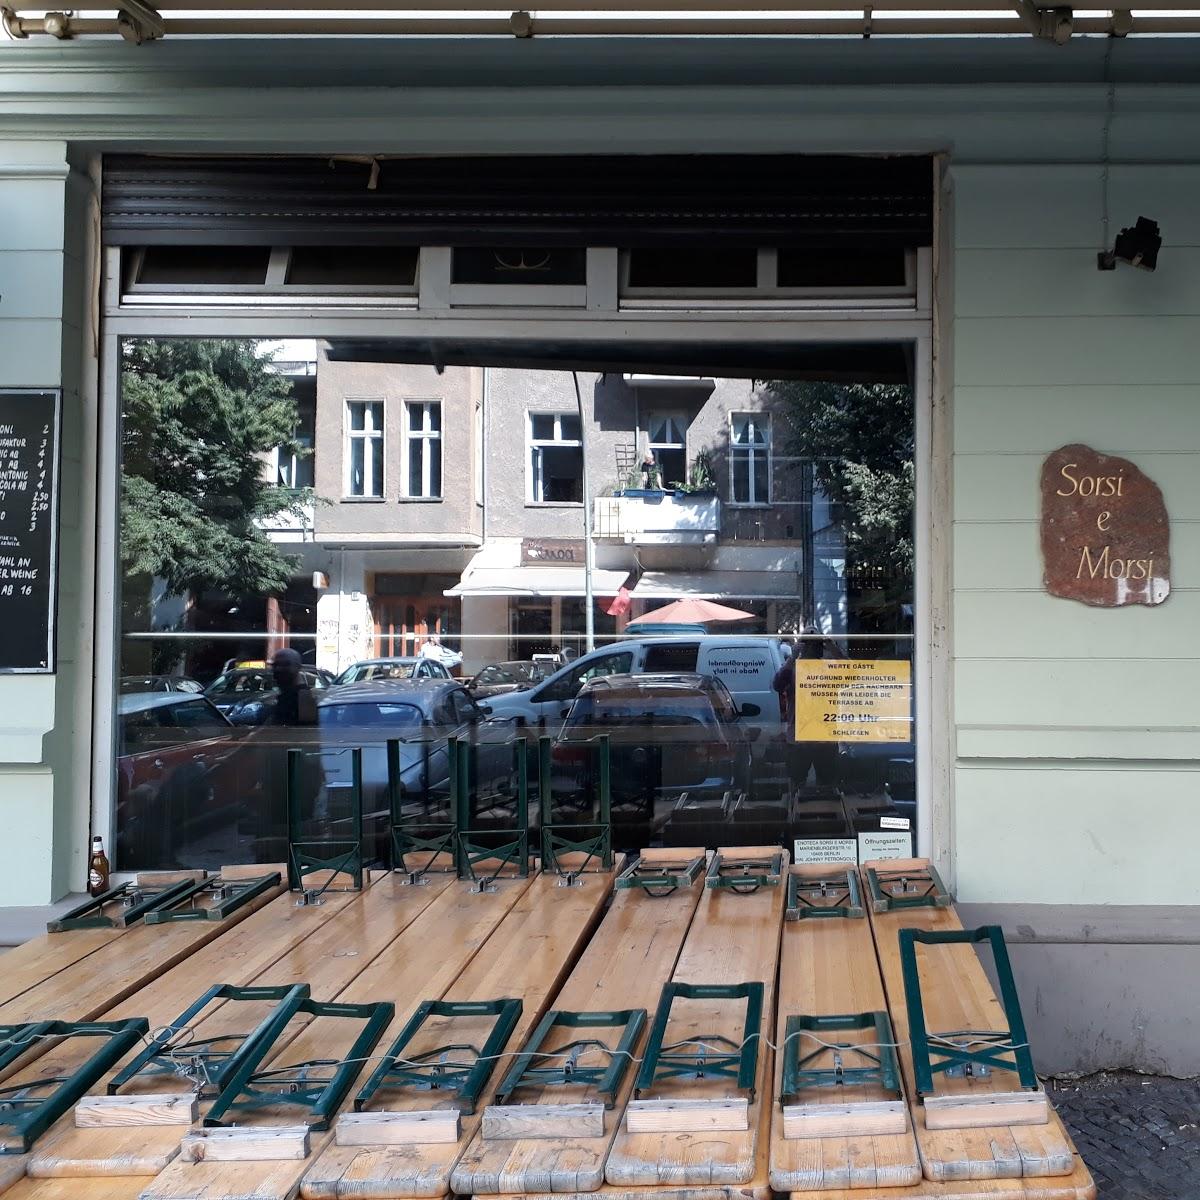 Restaurant "Sorsi e Morsi" in Berlin